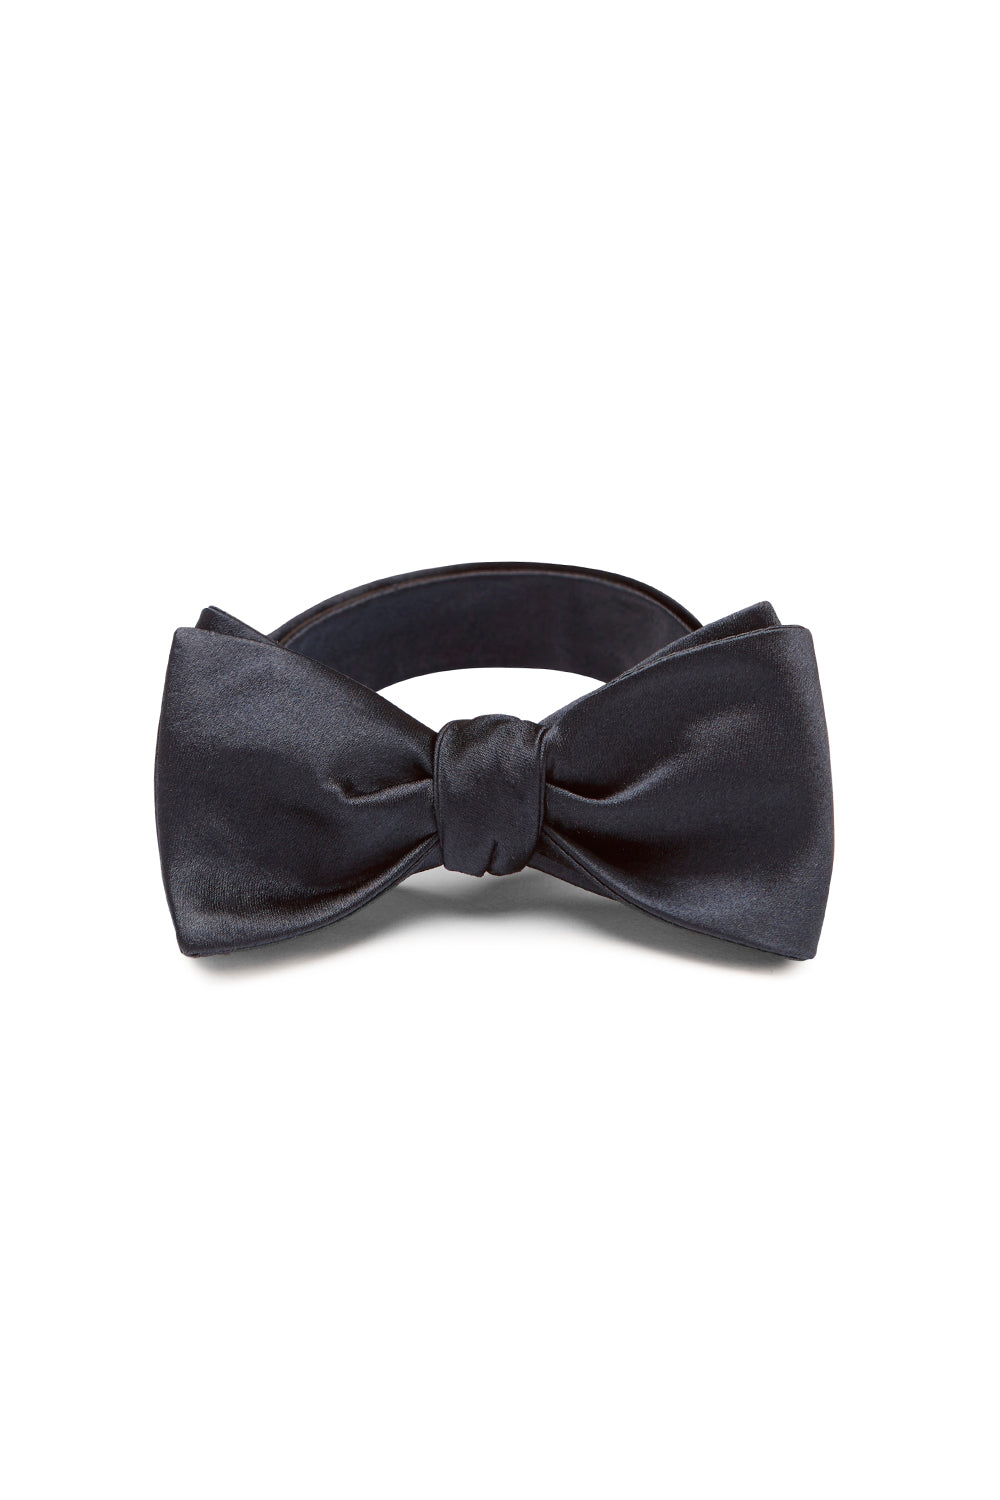 Mastalo Black Self-Tie Bow Tie